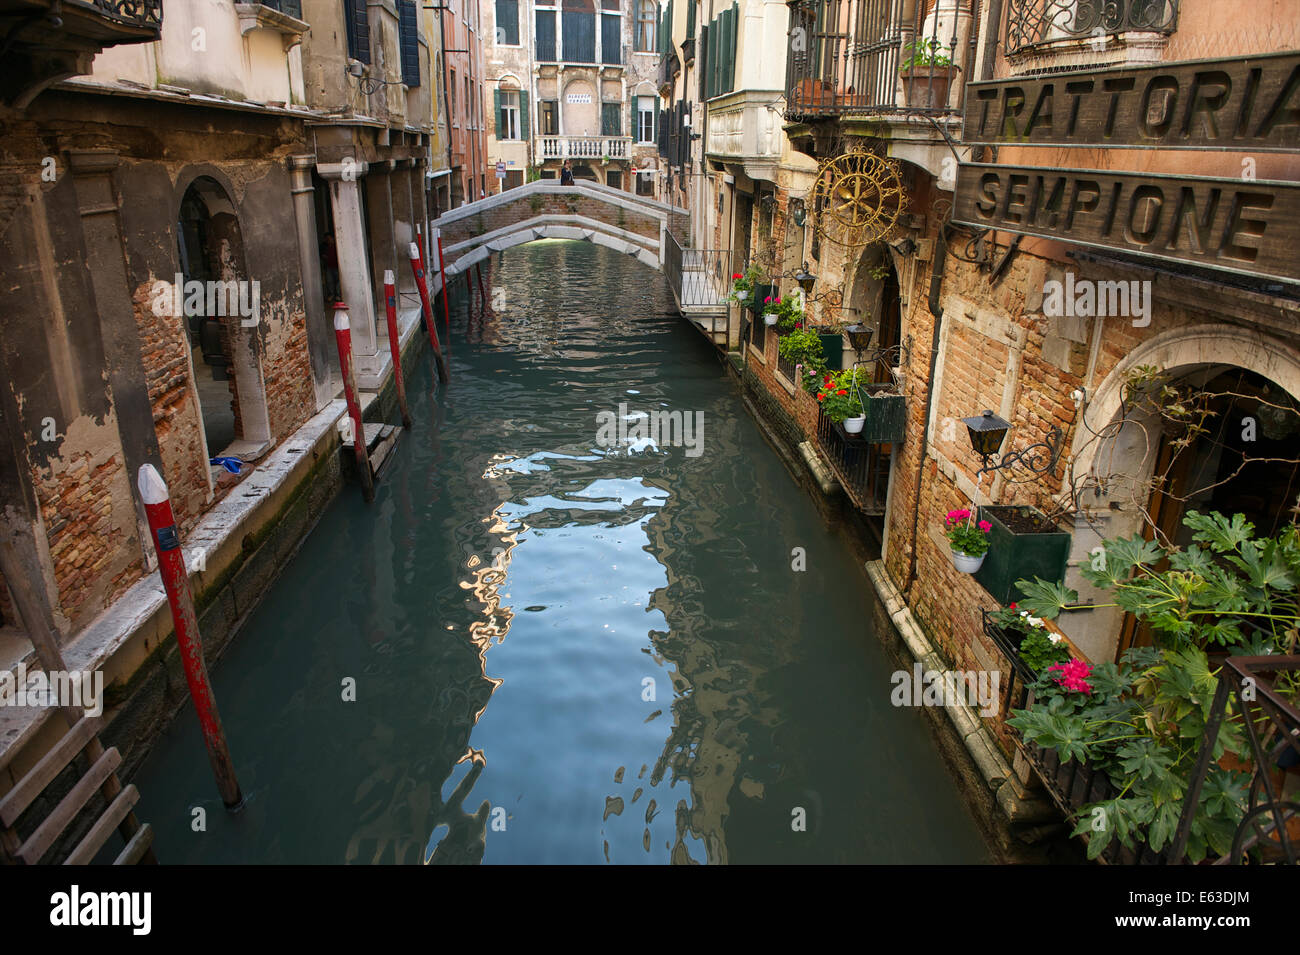 Venezia, Italia - aprile, 2013: tradizionale trattoria italiana ristorante si affaccia sul piccolo canale nel centro storico della città. Foto Stock